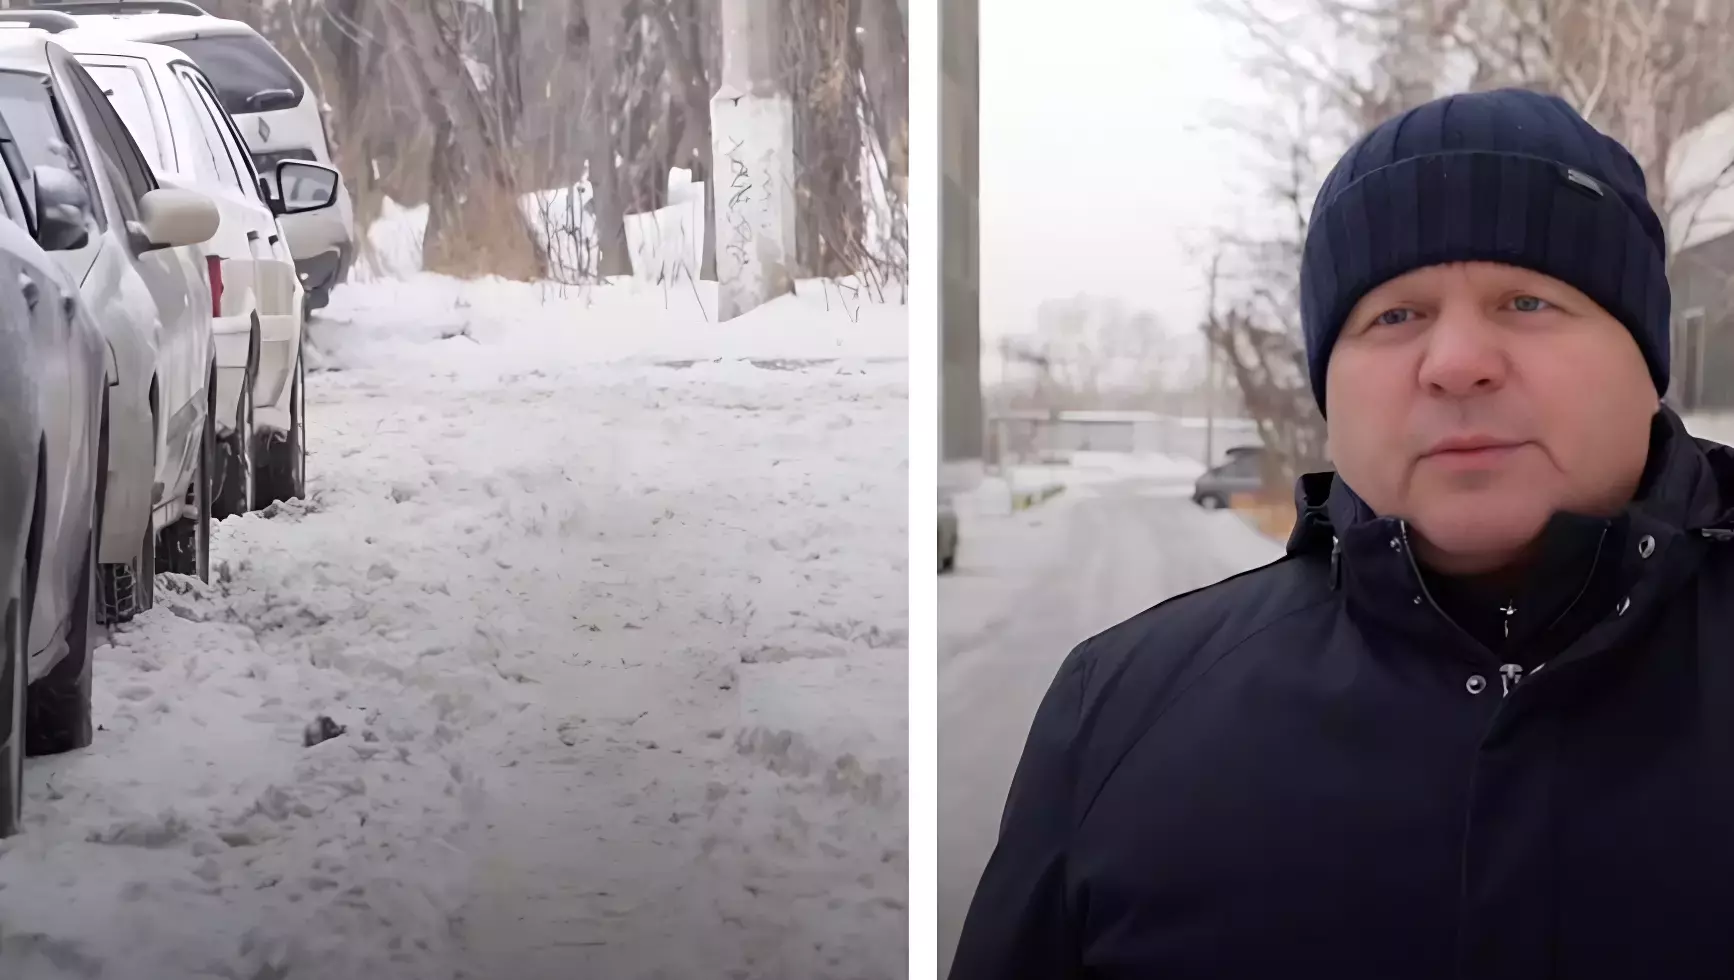 Мэр Красноярска хочет привлечь заключённых к уборке снега из-за нехватки рабочих